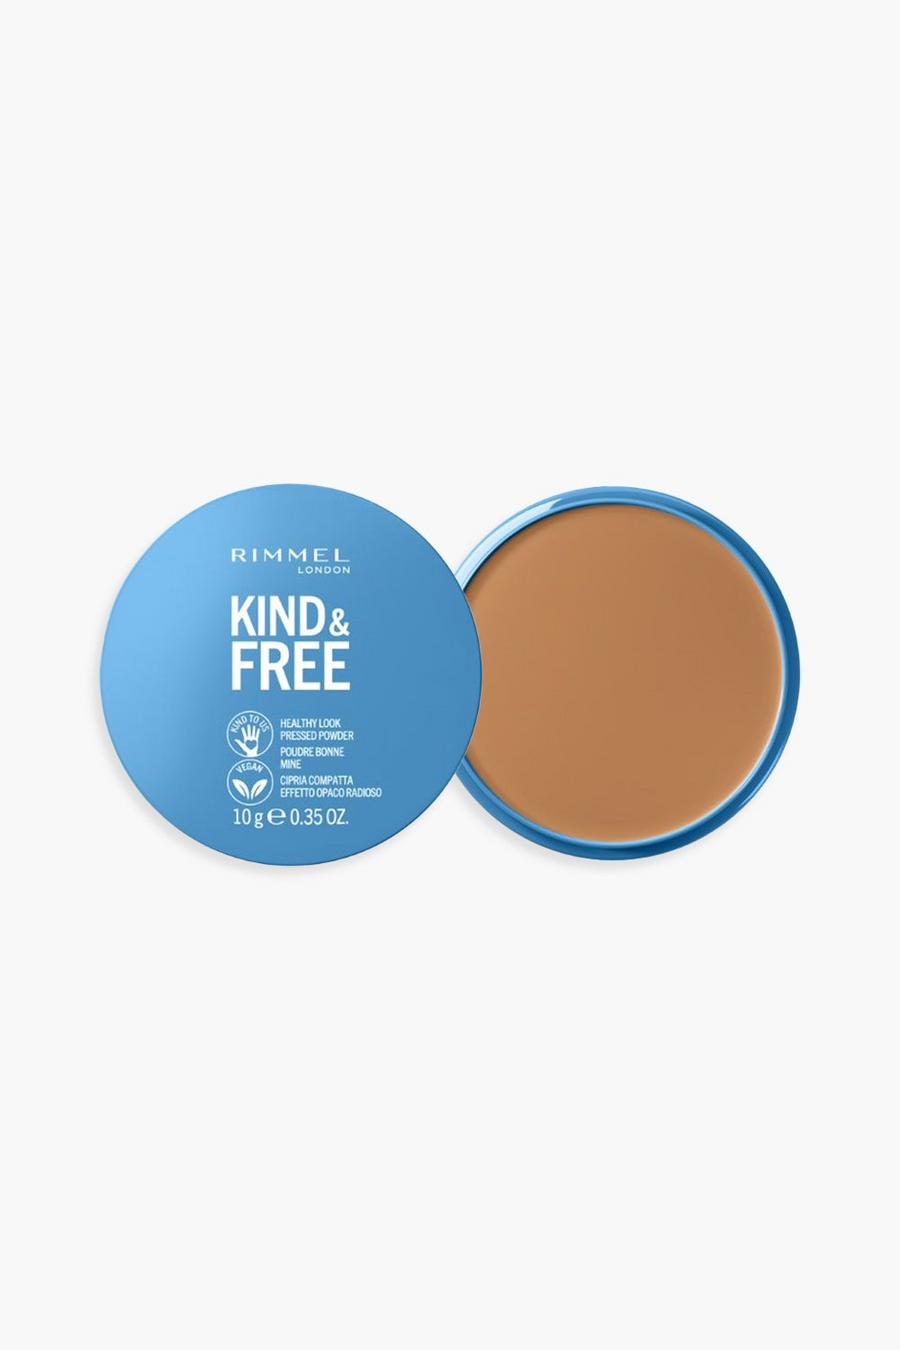 Rimmel Kind & Free - Poudre bronzante, Tan marron